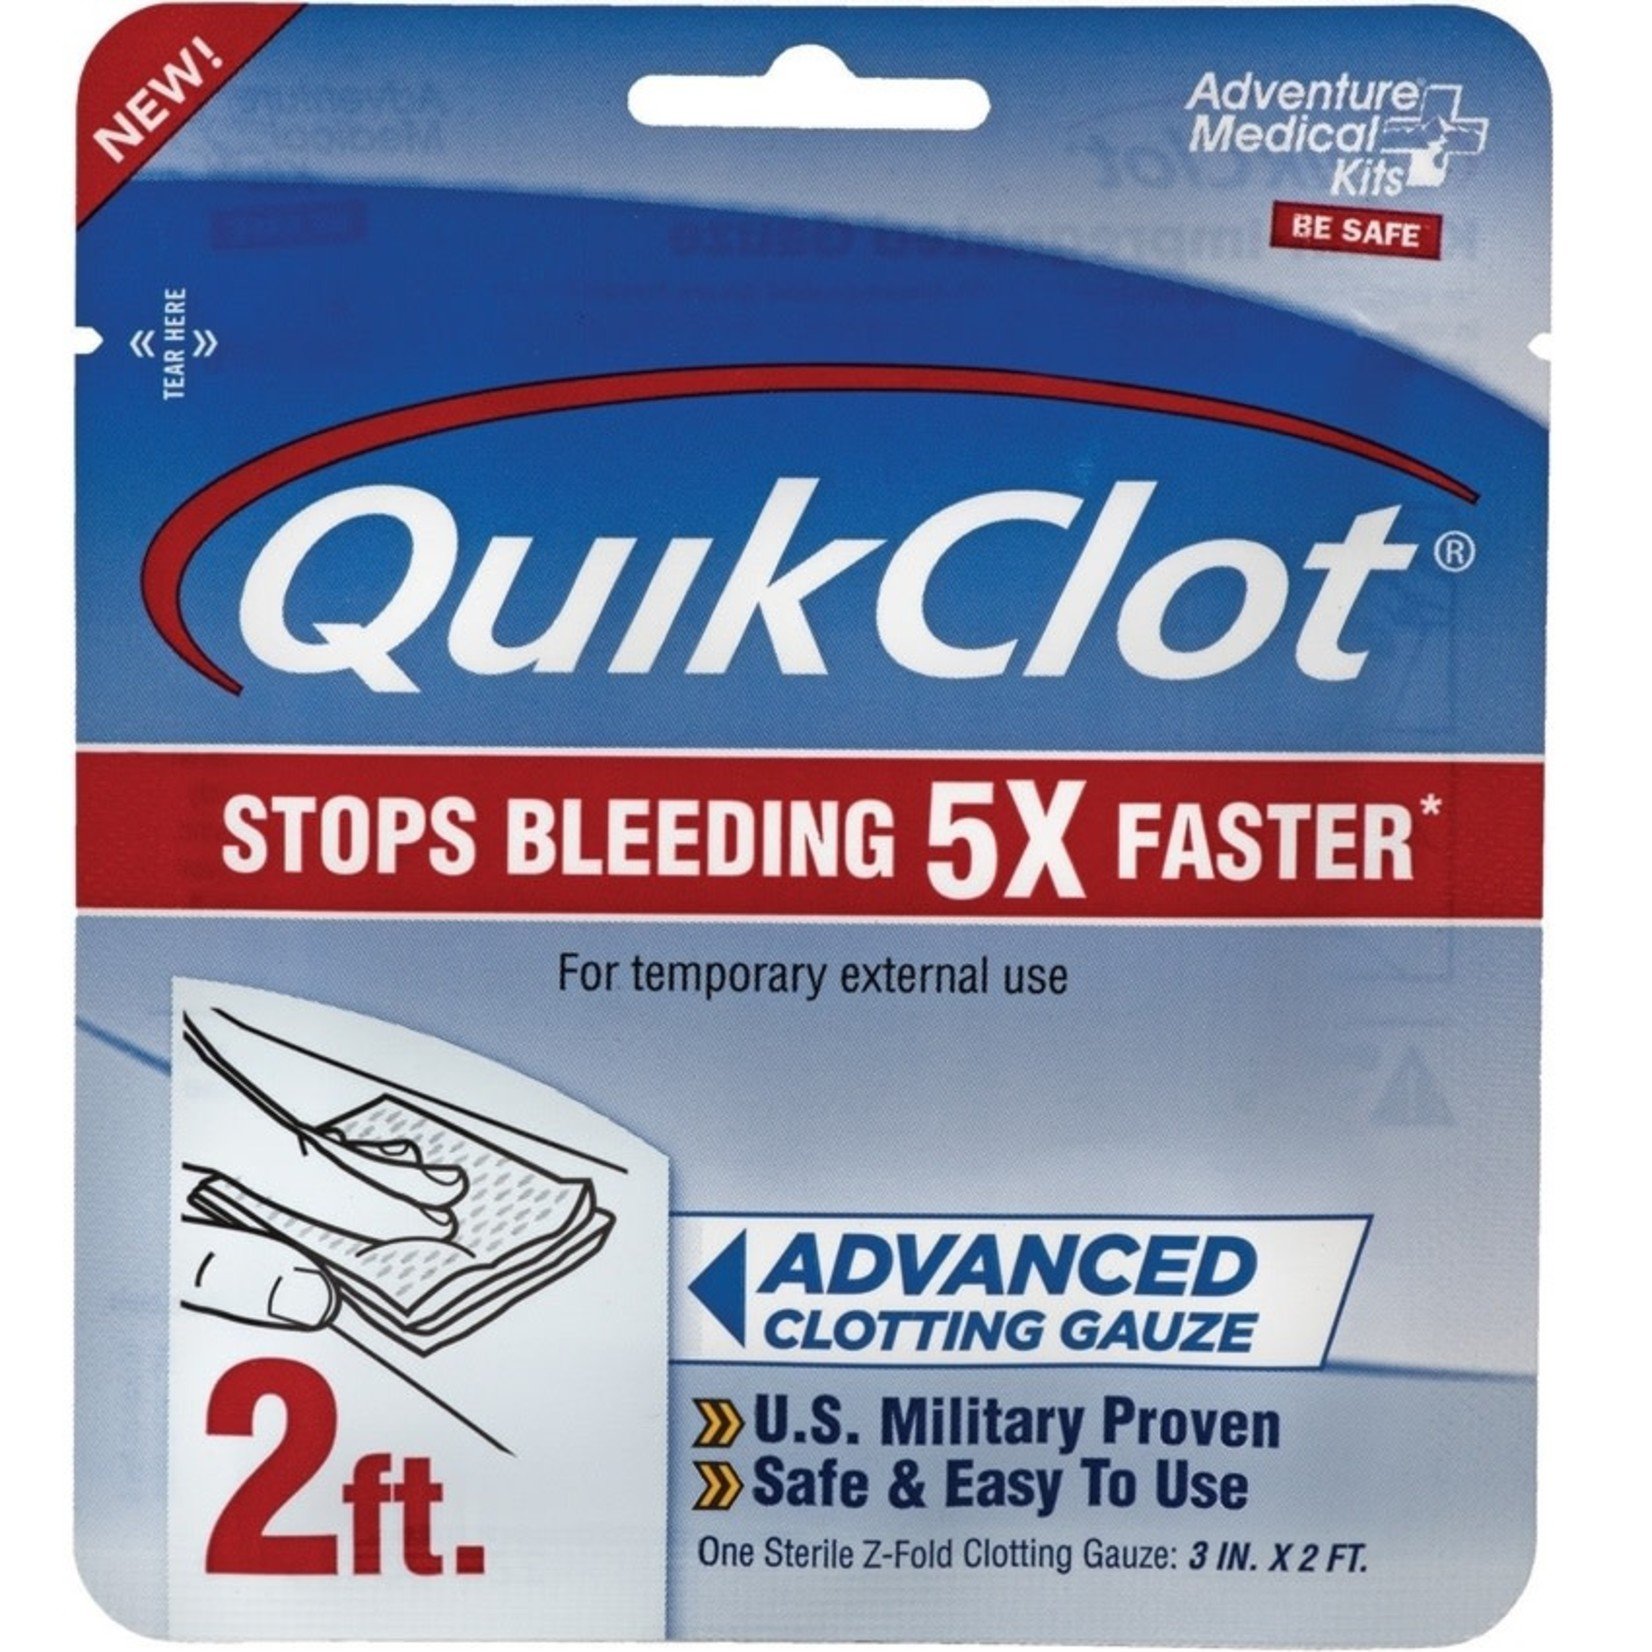 Adventure Medical QuikClot Advanced Clotting Gauze - 3" x 2 ft.